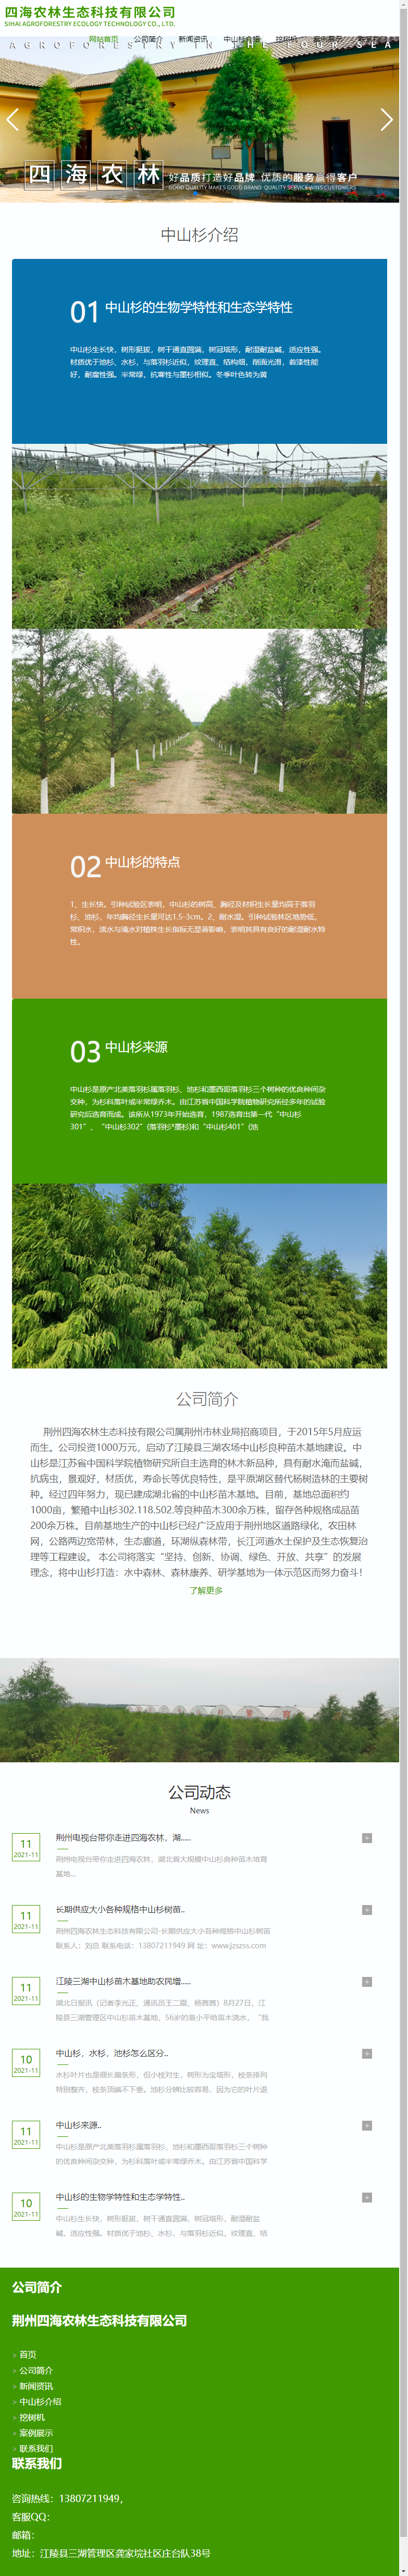 荆州四海农林生态科技有限公司网站案例